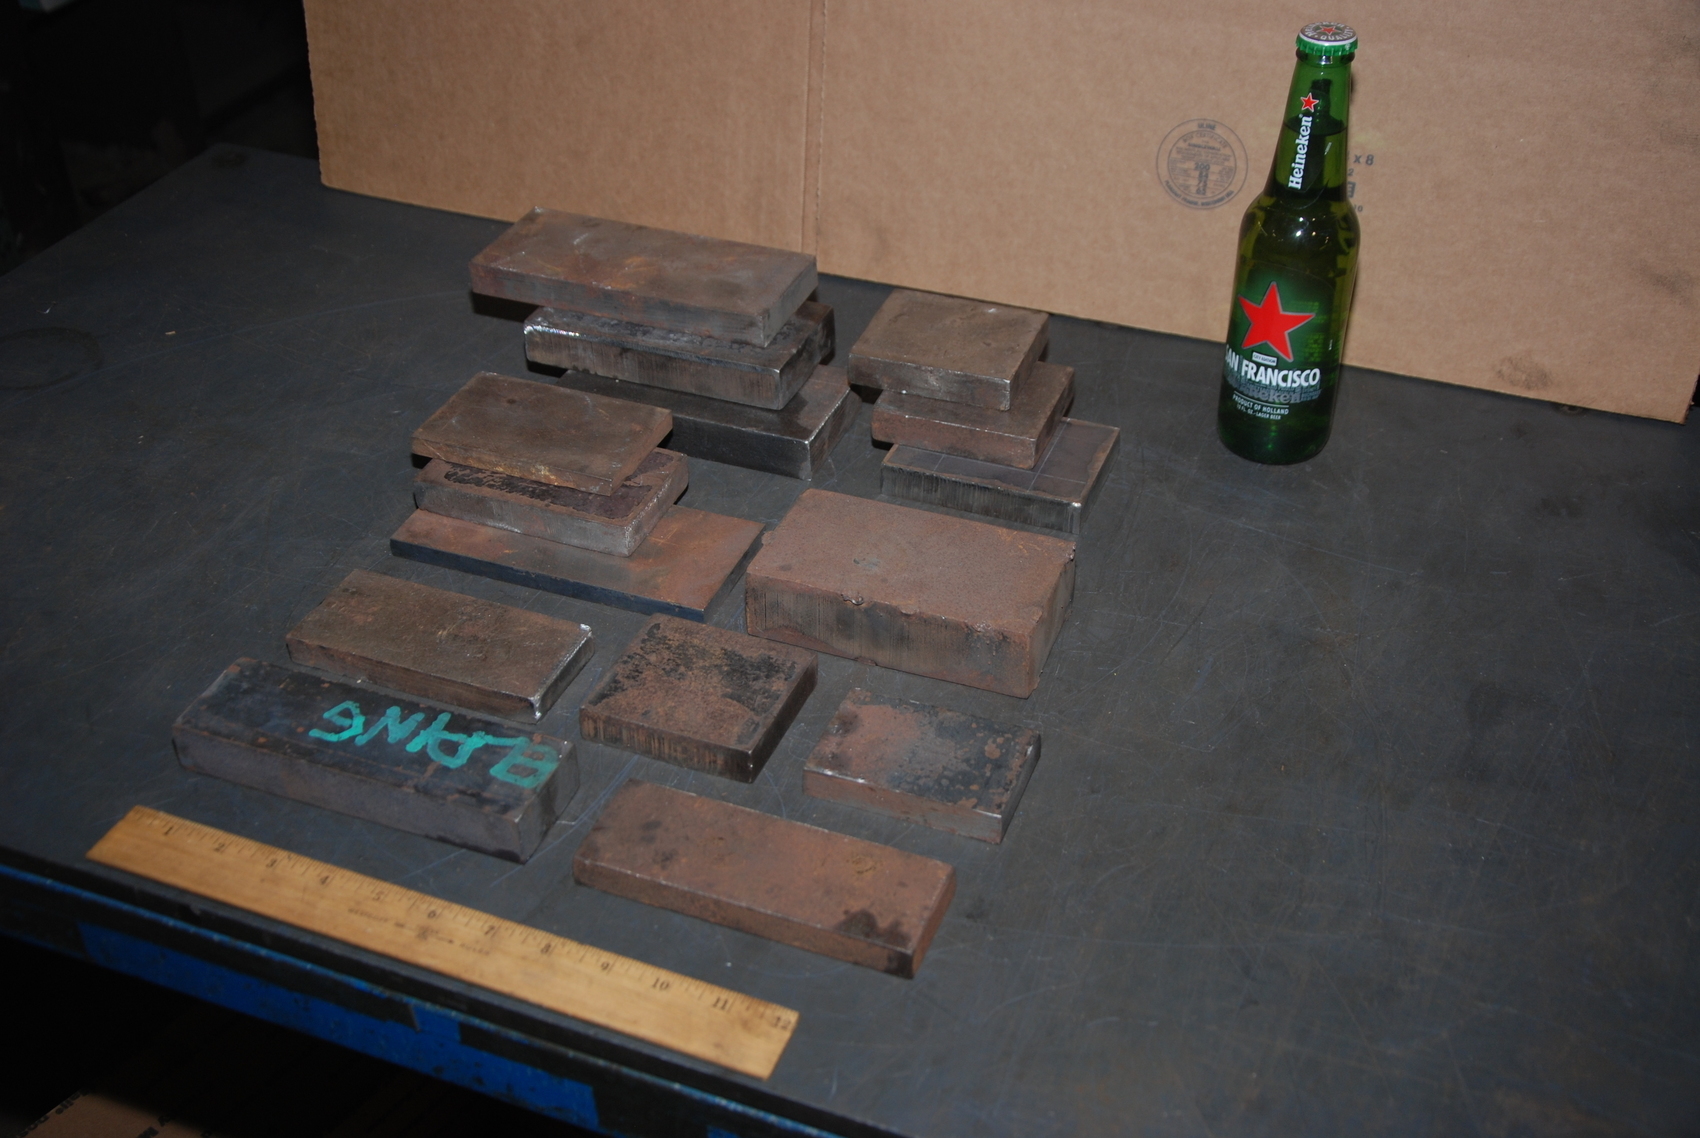 Lot of 15 steel Rectangular Bars for blacksmith anvil,45 lbs